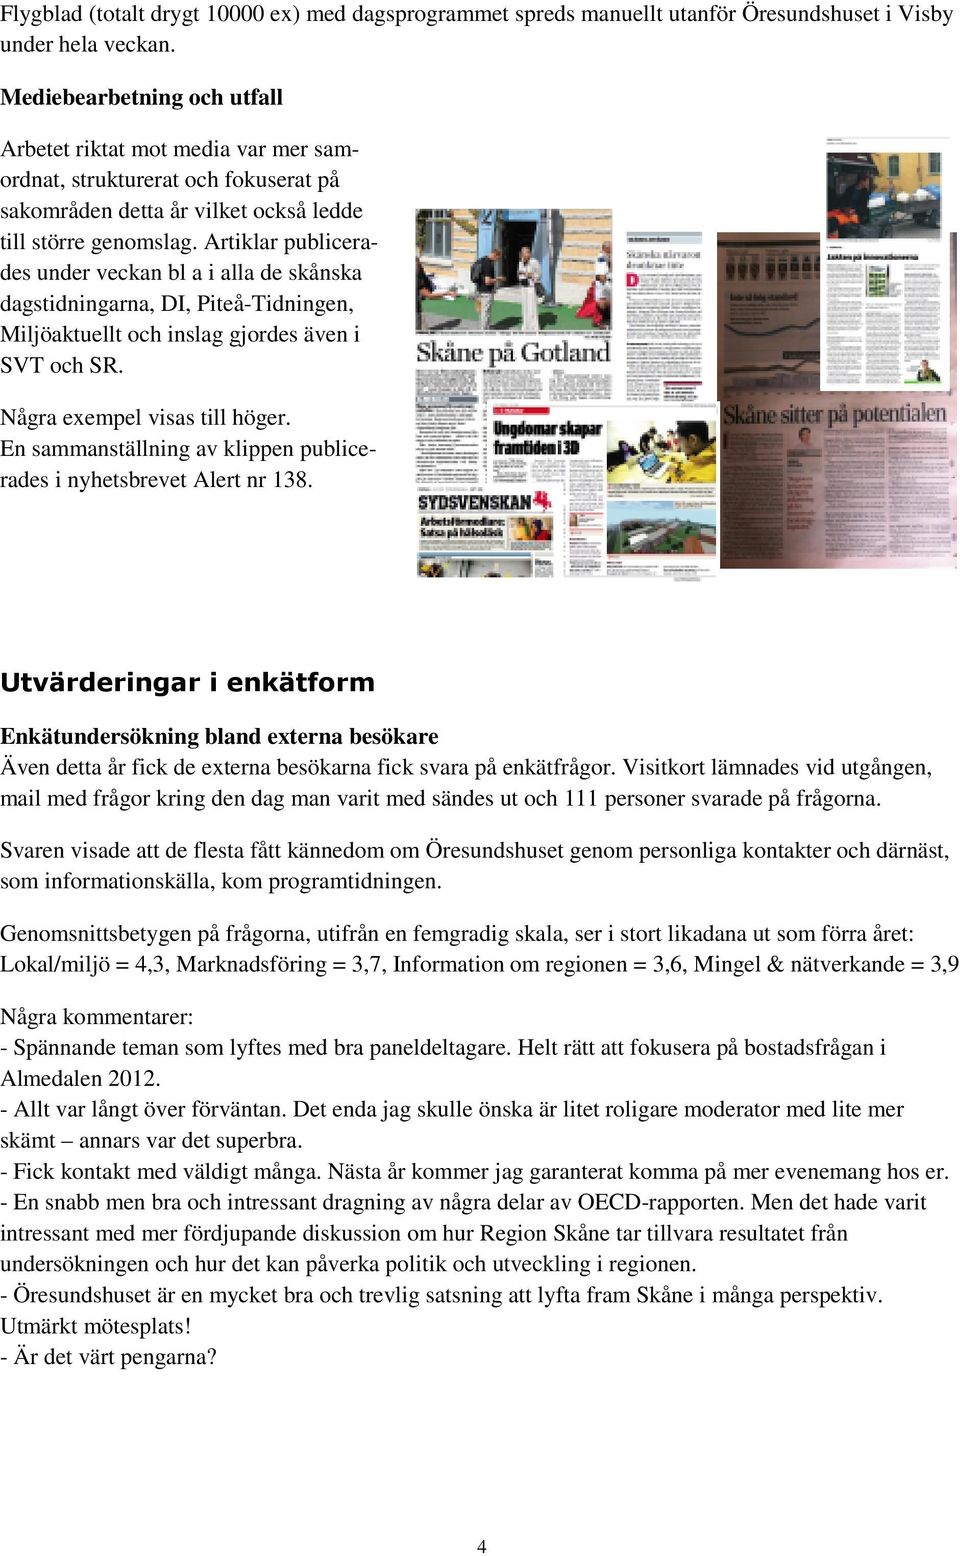 Artiklar publicerades under veckan bl a i alla de skånska dagstidningarna, DI, Piteå-Tidningen, Miljöaktuellt och inslag gjordes även i SVT och SR. Några exempel visas till höger.